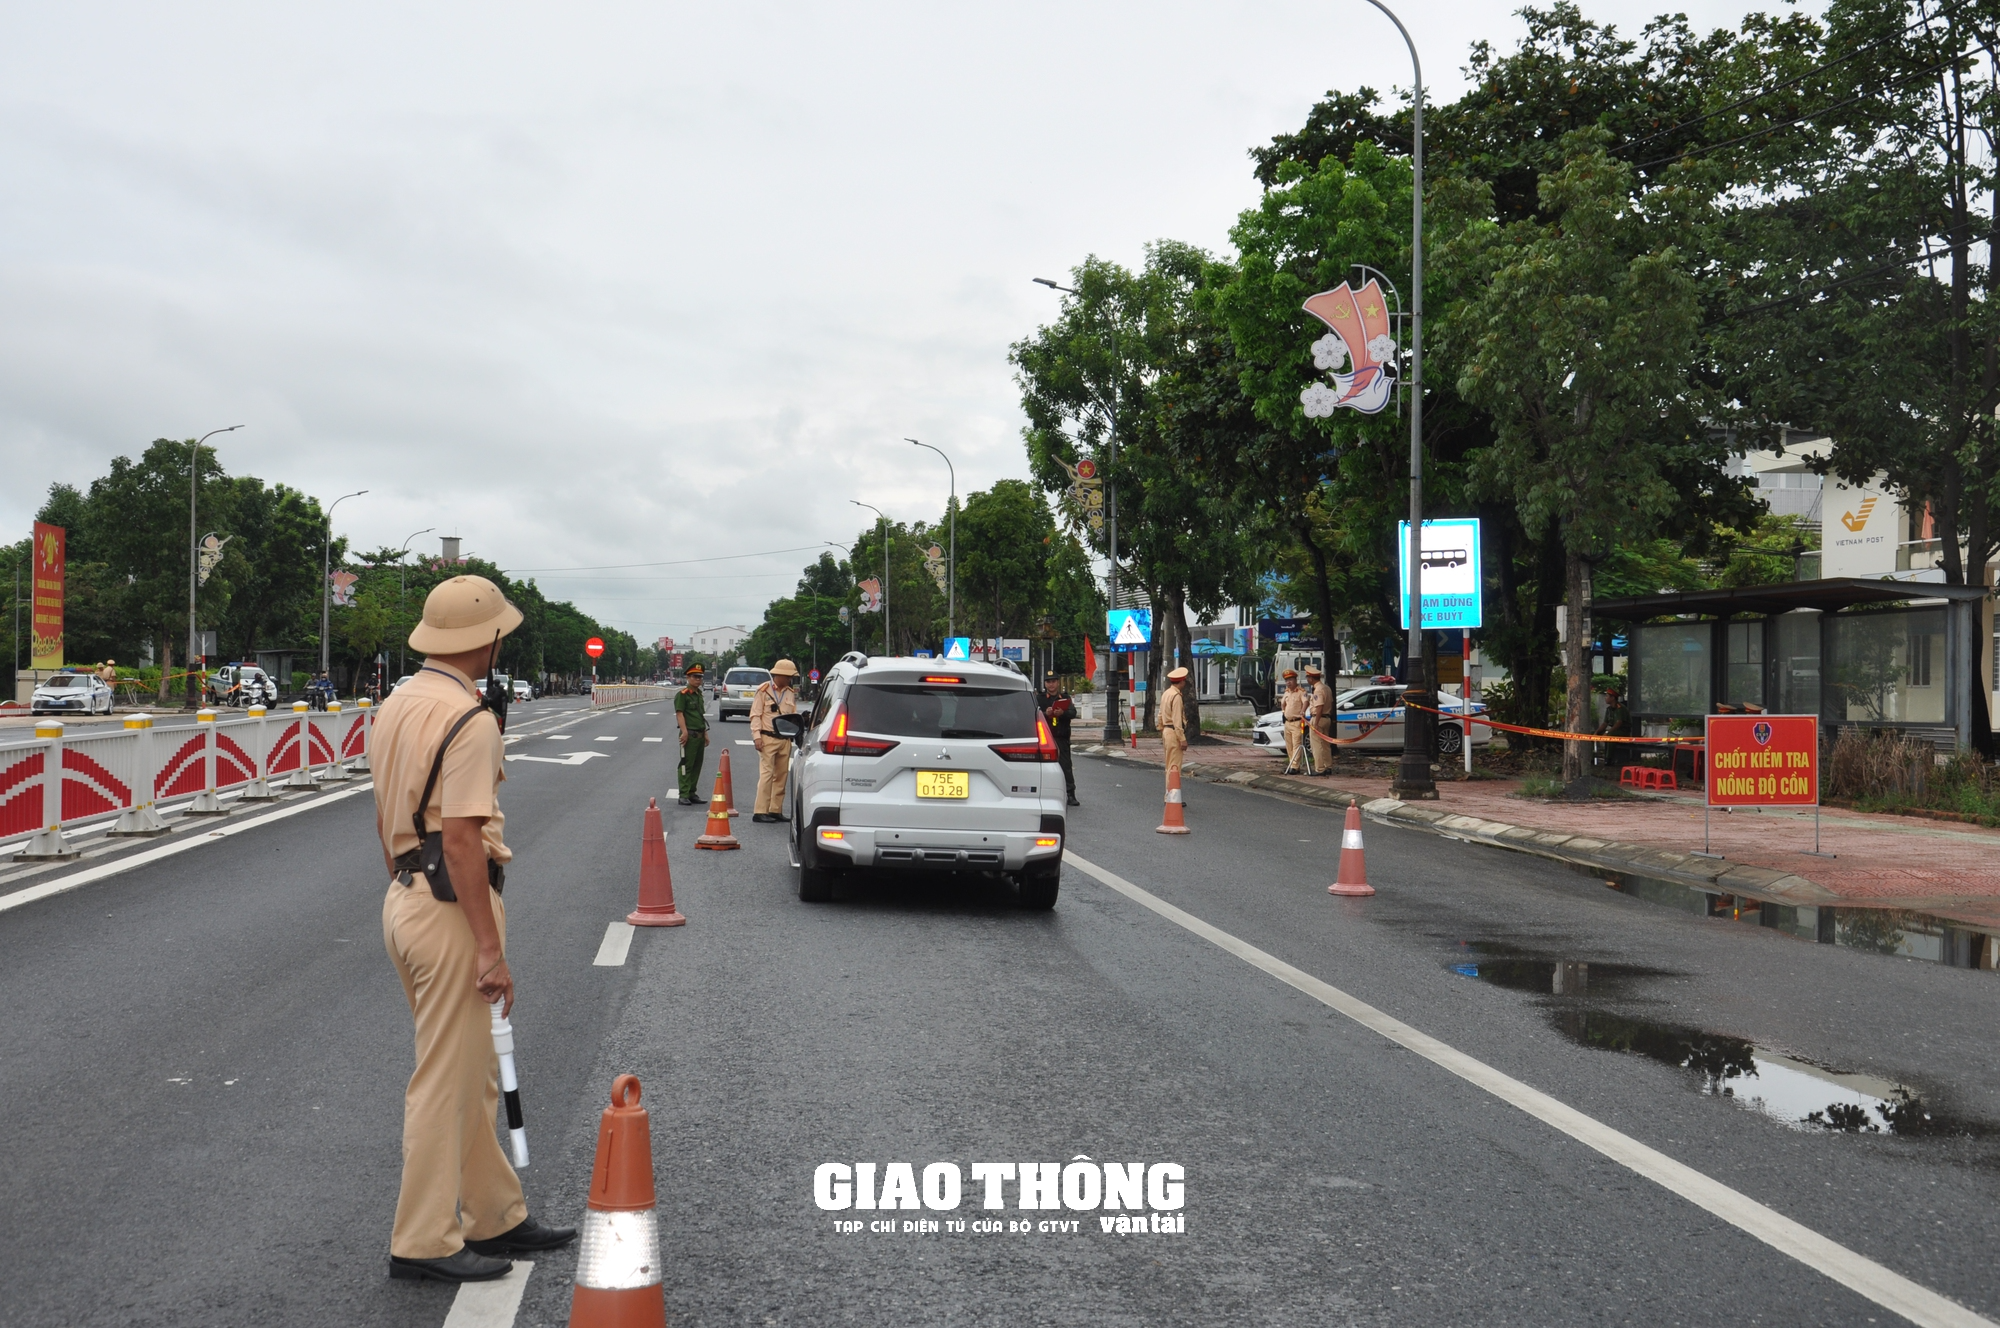 Dàn trận xử lý nồng độ cồn trên QL1 ở tỉnh Thừa Thiên-Huế: Loạt người vi phạm sau bữa ăn trưa - Ảnh 8.